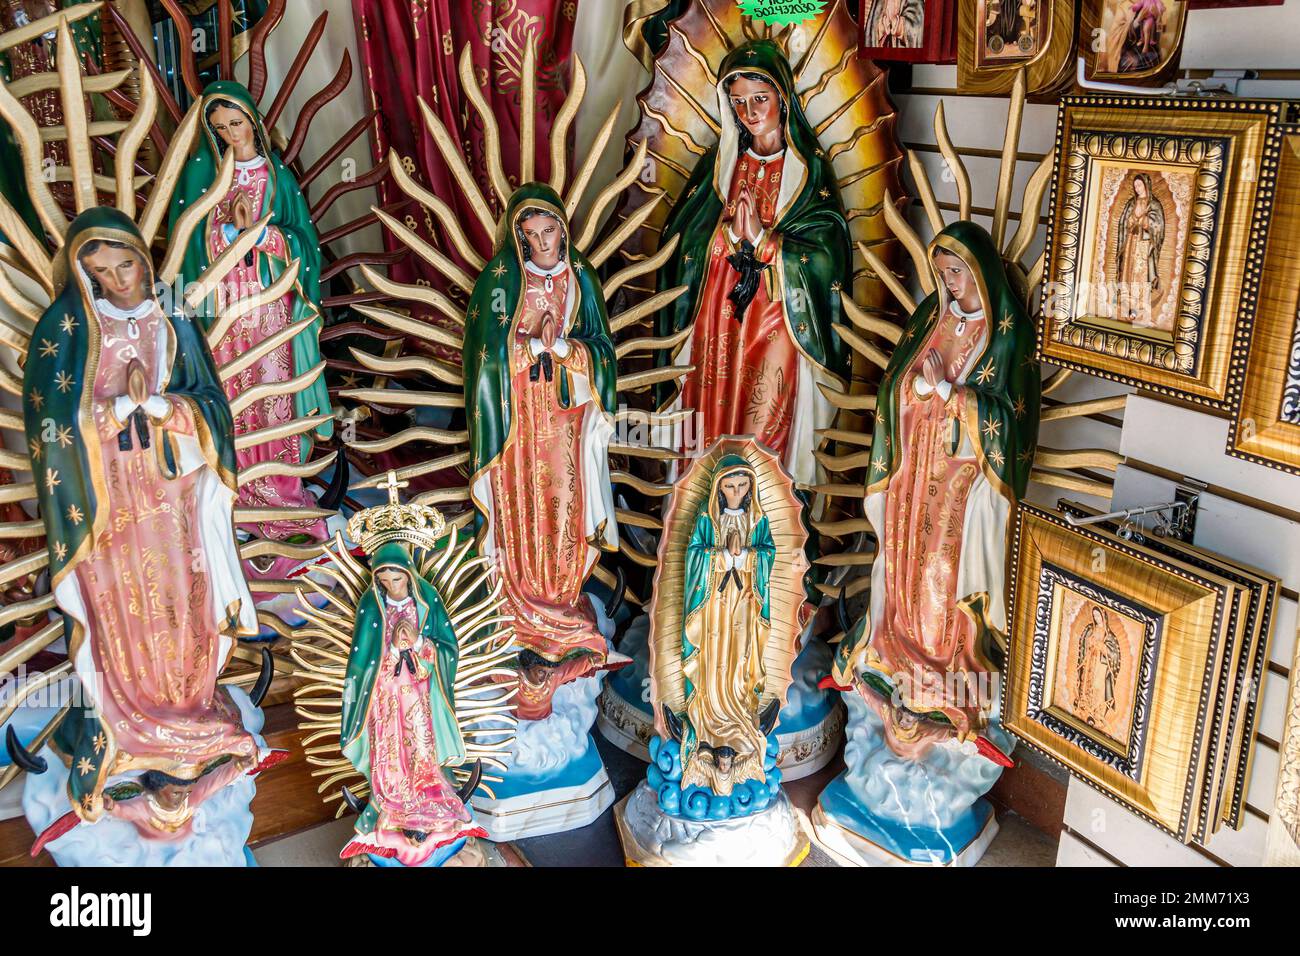 Mexiko-Stadt, historisches Zentrum Historico Centro, religiöse Ikonen, Jungfrau Maria von Guadalupe, Statuen Statuetten, Innenraum, Ladengeschäft Stockfoto